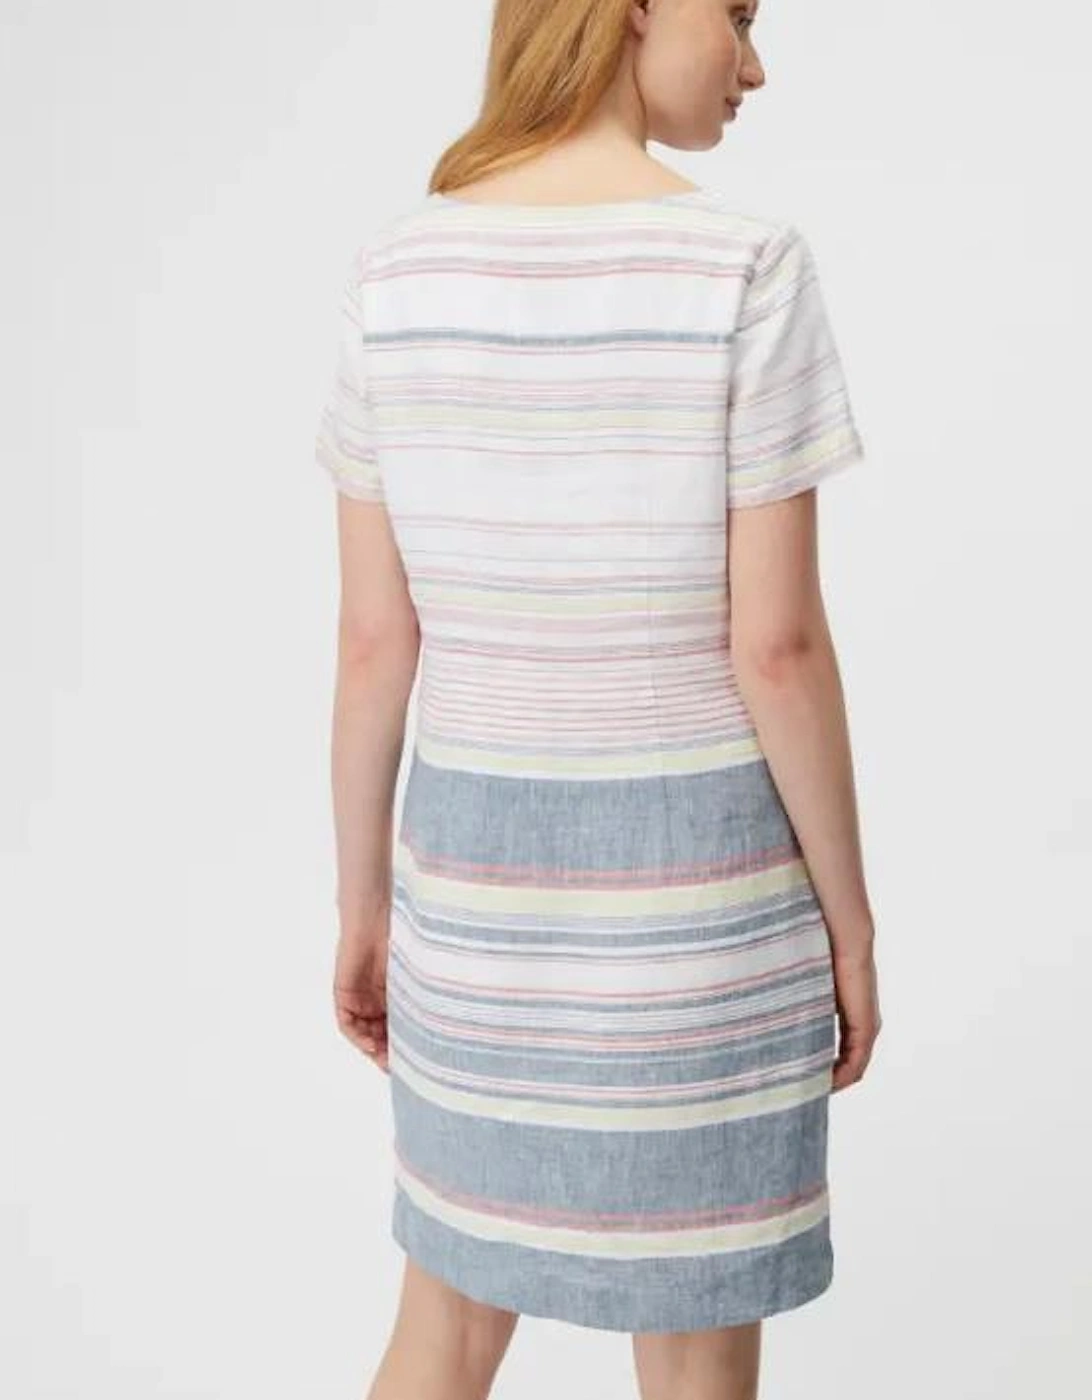 Chalkboard Dress Multi Stripe